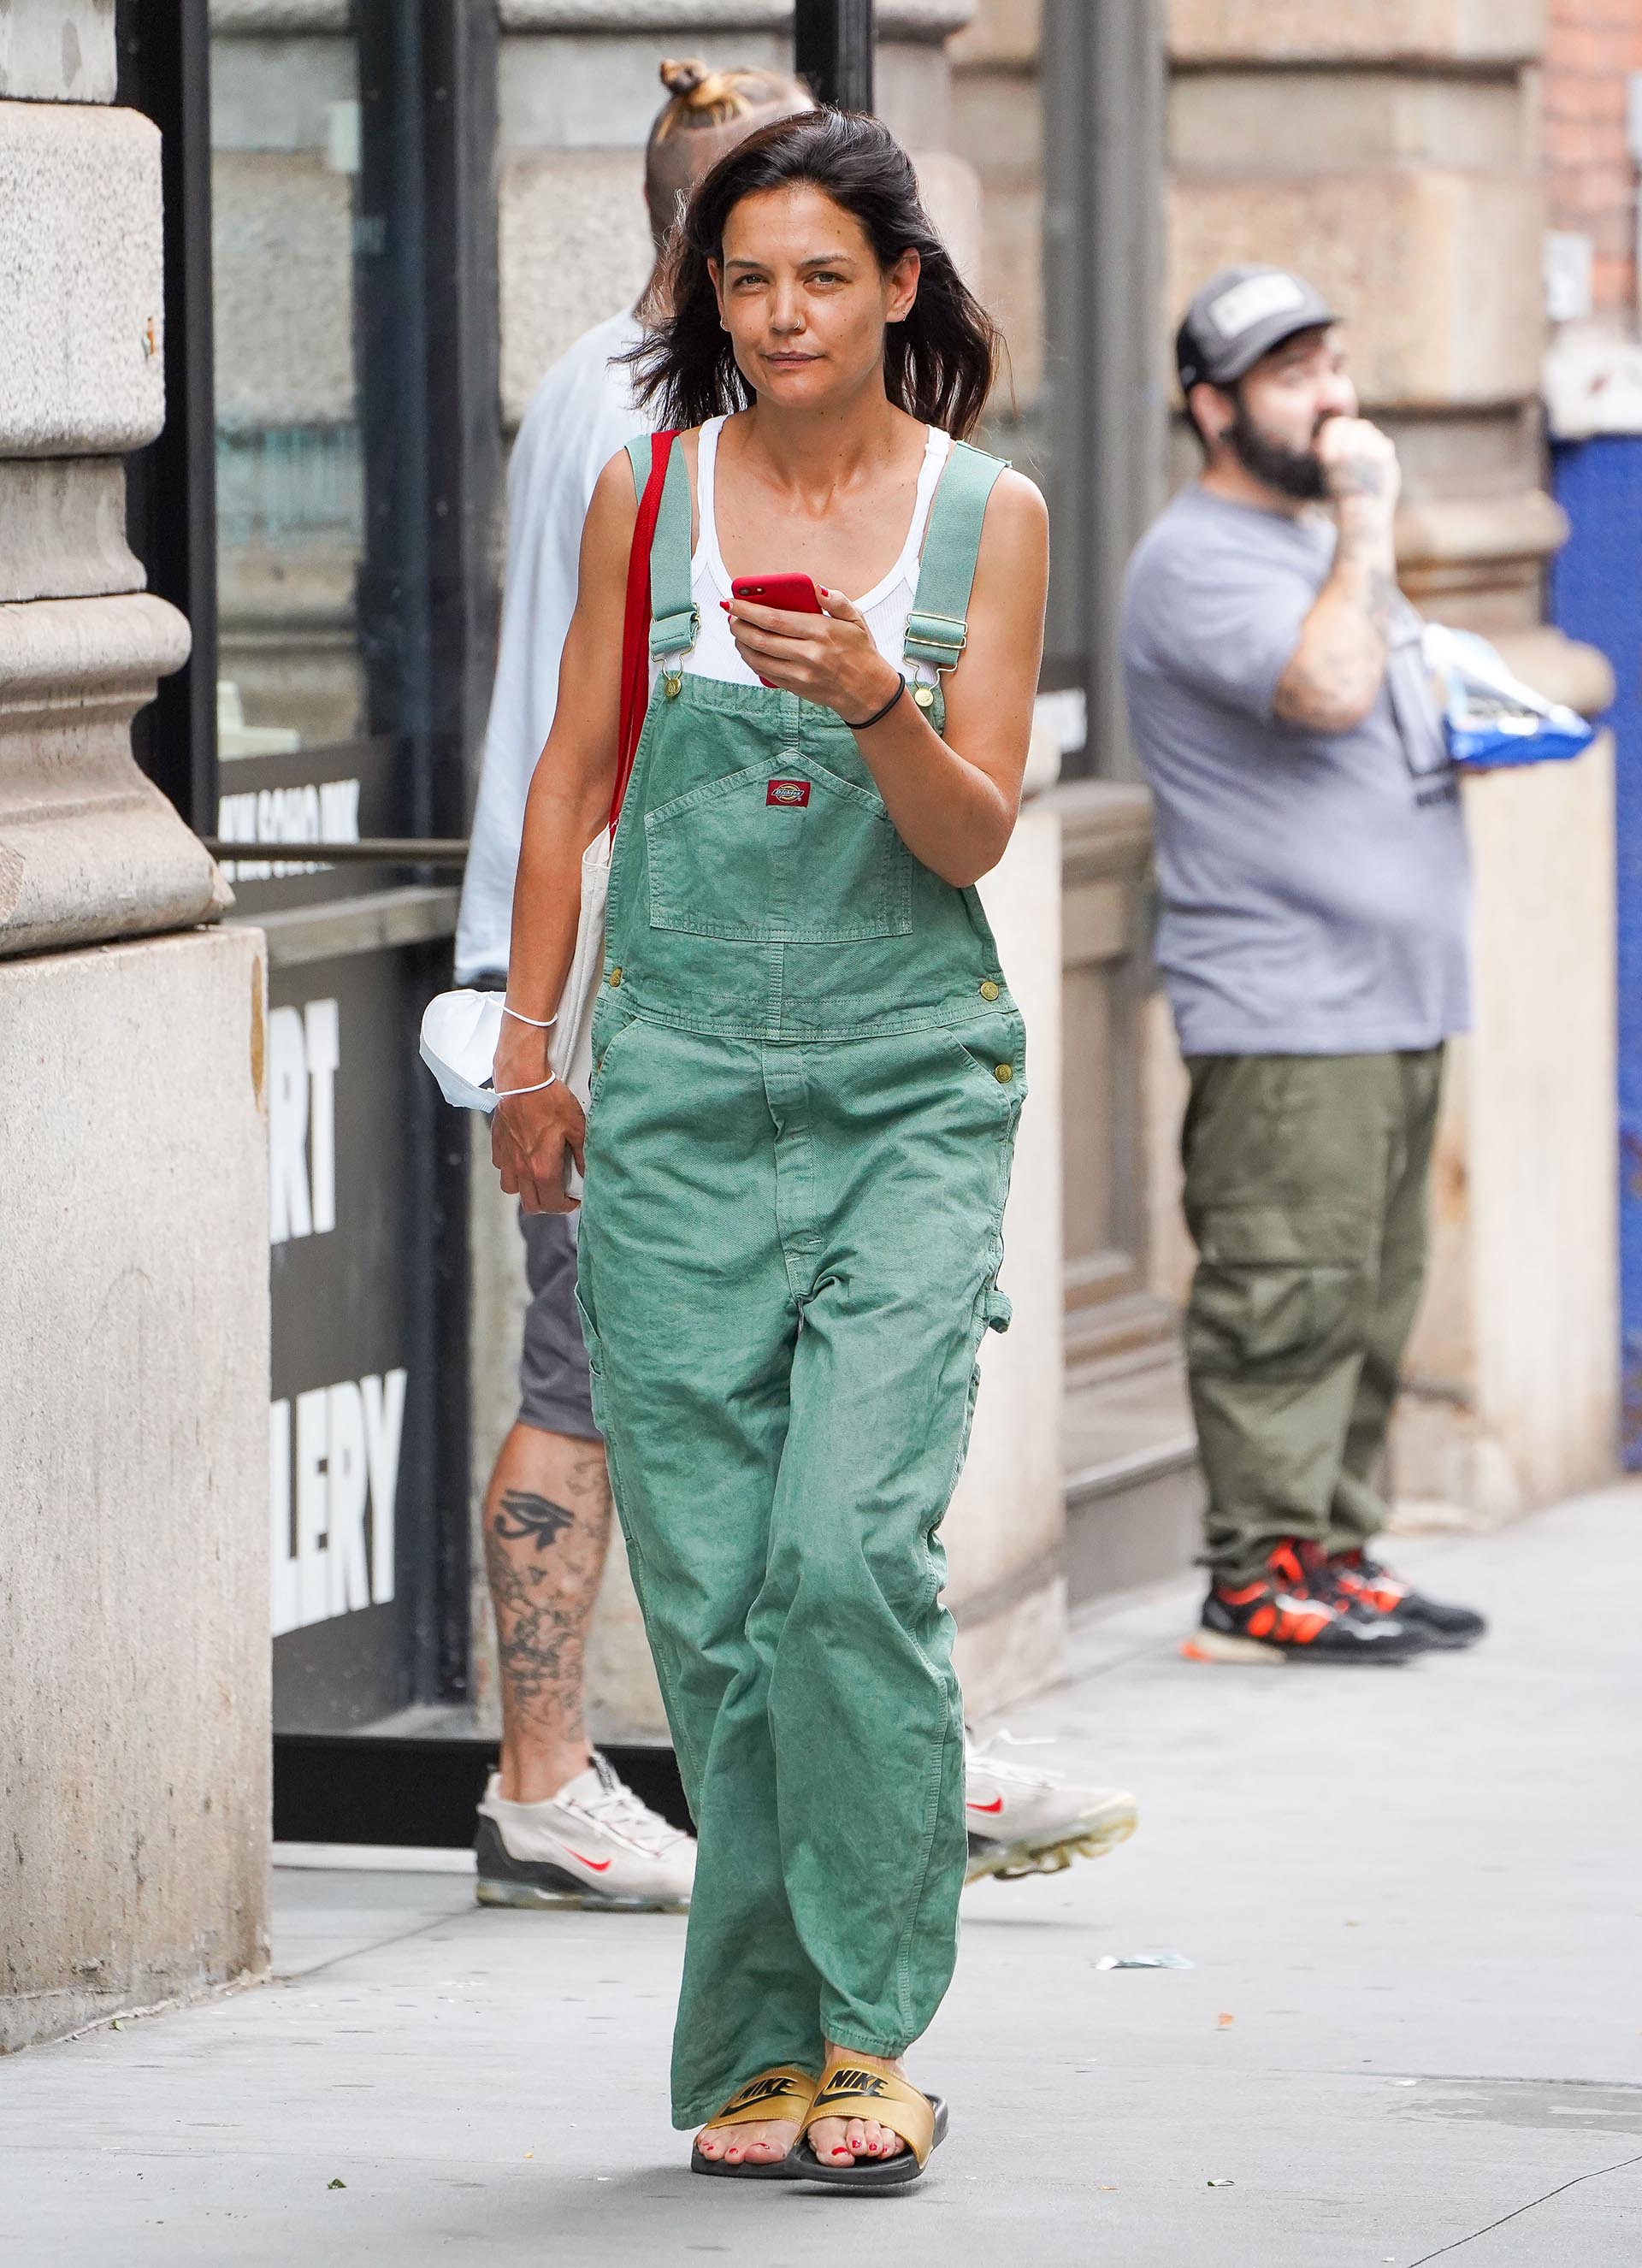 Katie Holmes recorrió las tiendas más exclusivas del barrio Soho de Nueva York, en donde hizo algunas compras. Para ello, la actriz lució un enterito de jean color verde y una musculosa blanca. Además, cargó una cartera roja que casualmente combinó con la funda de su celular